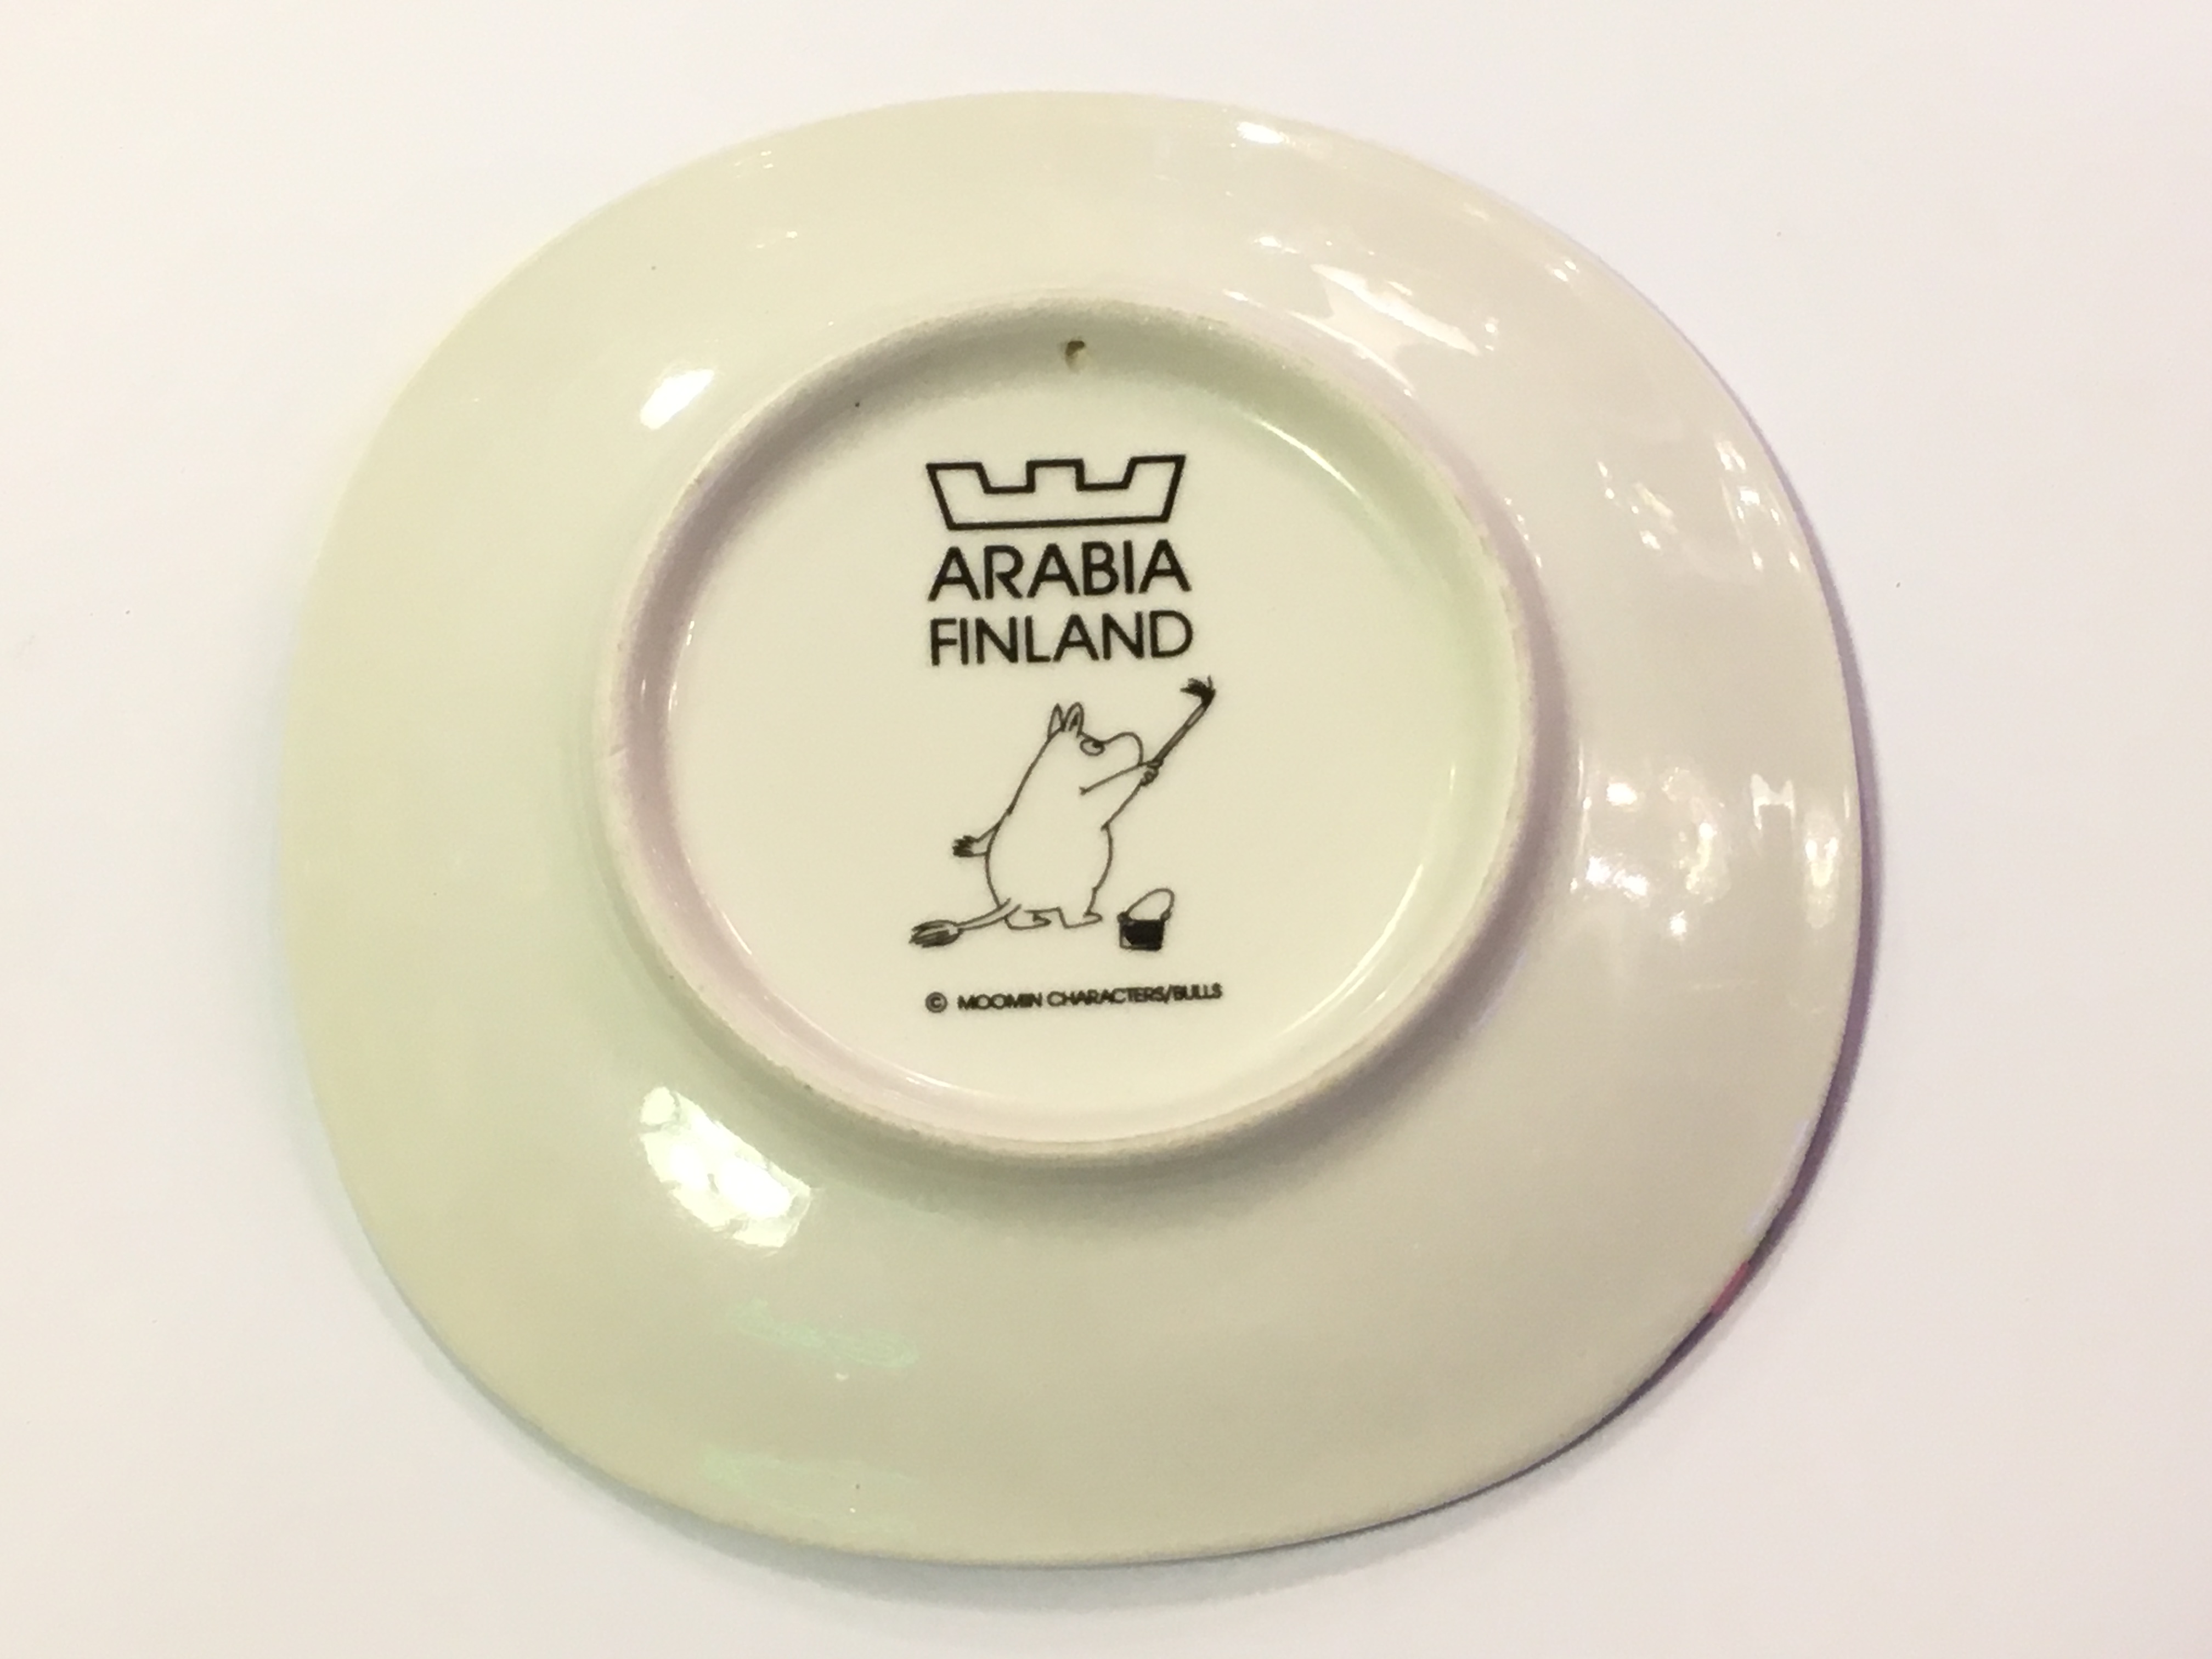 【値下げ中】ARABIA ムーミン廃番ビンテージプレート 月光